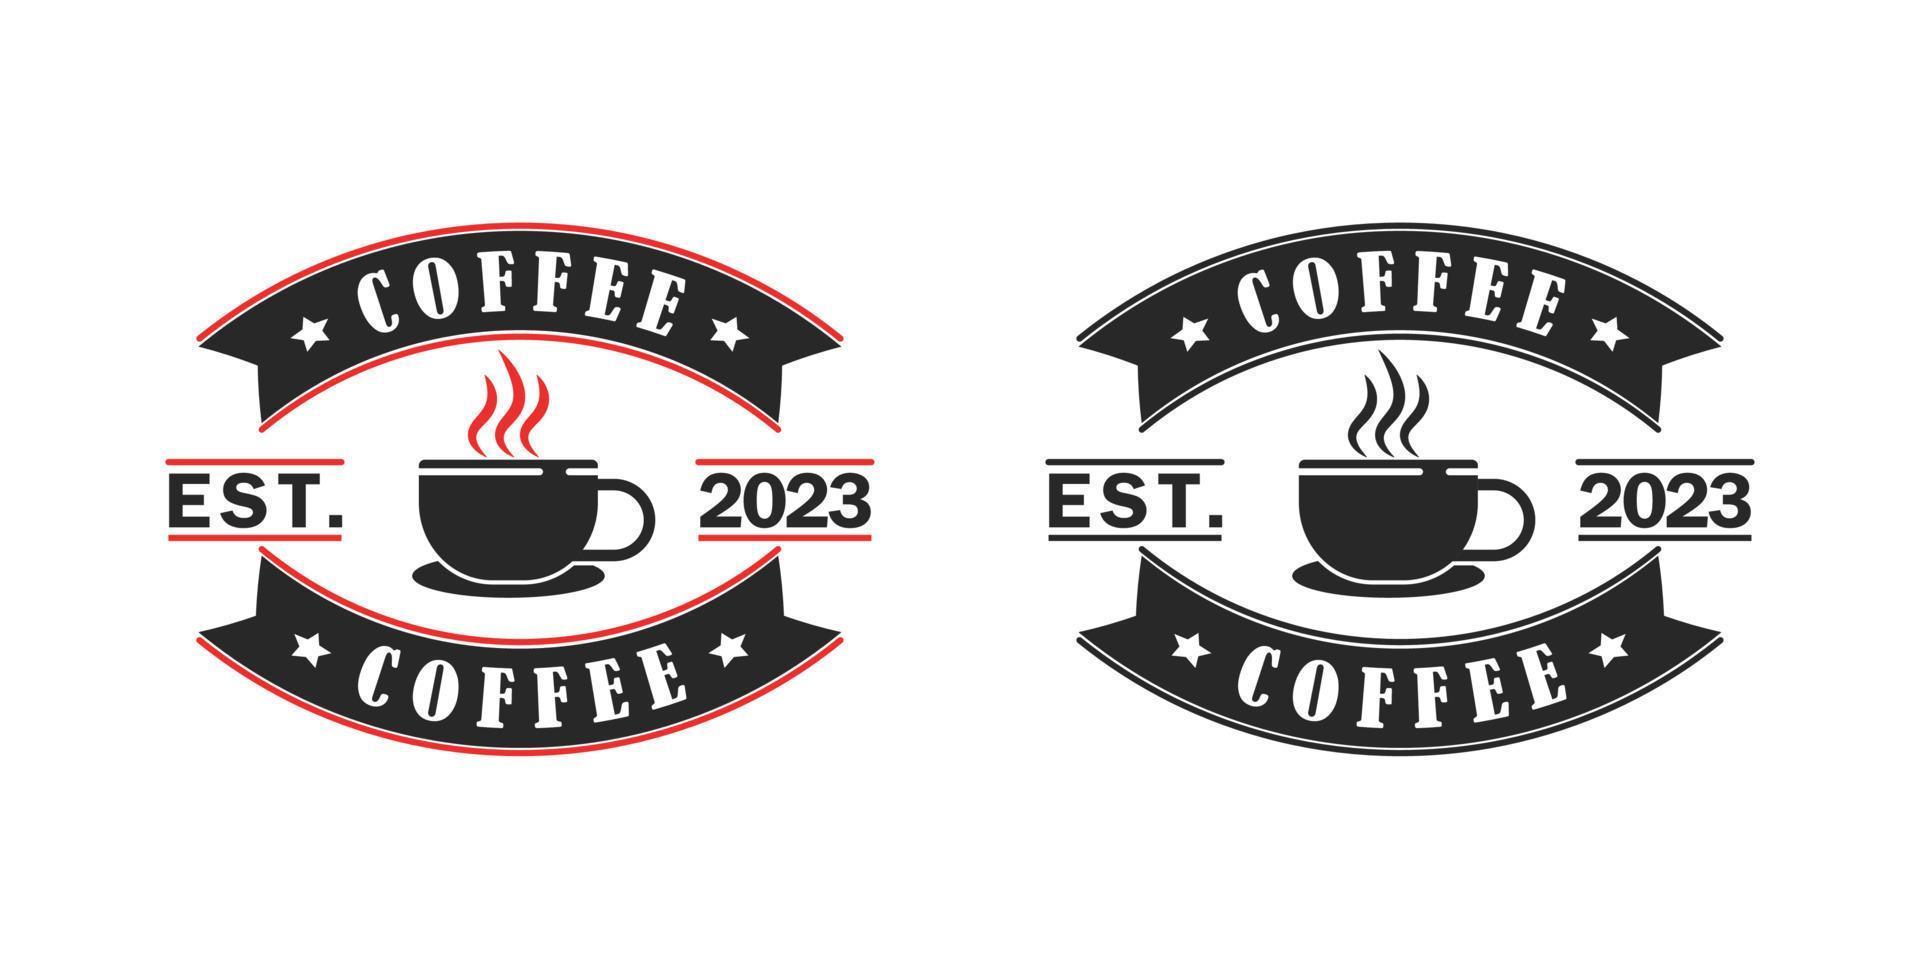 grain de café marque logo insigne étiquette timbre autocollant ancien vecteur